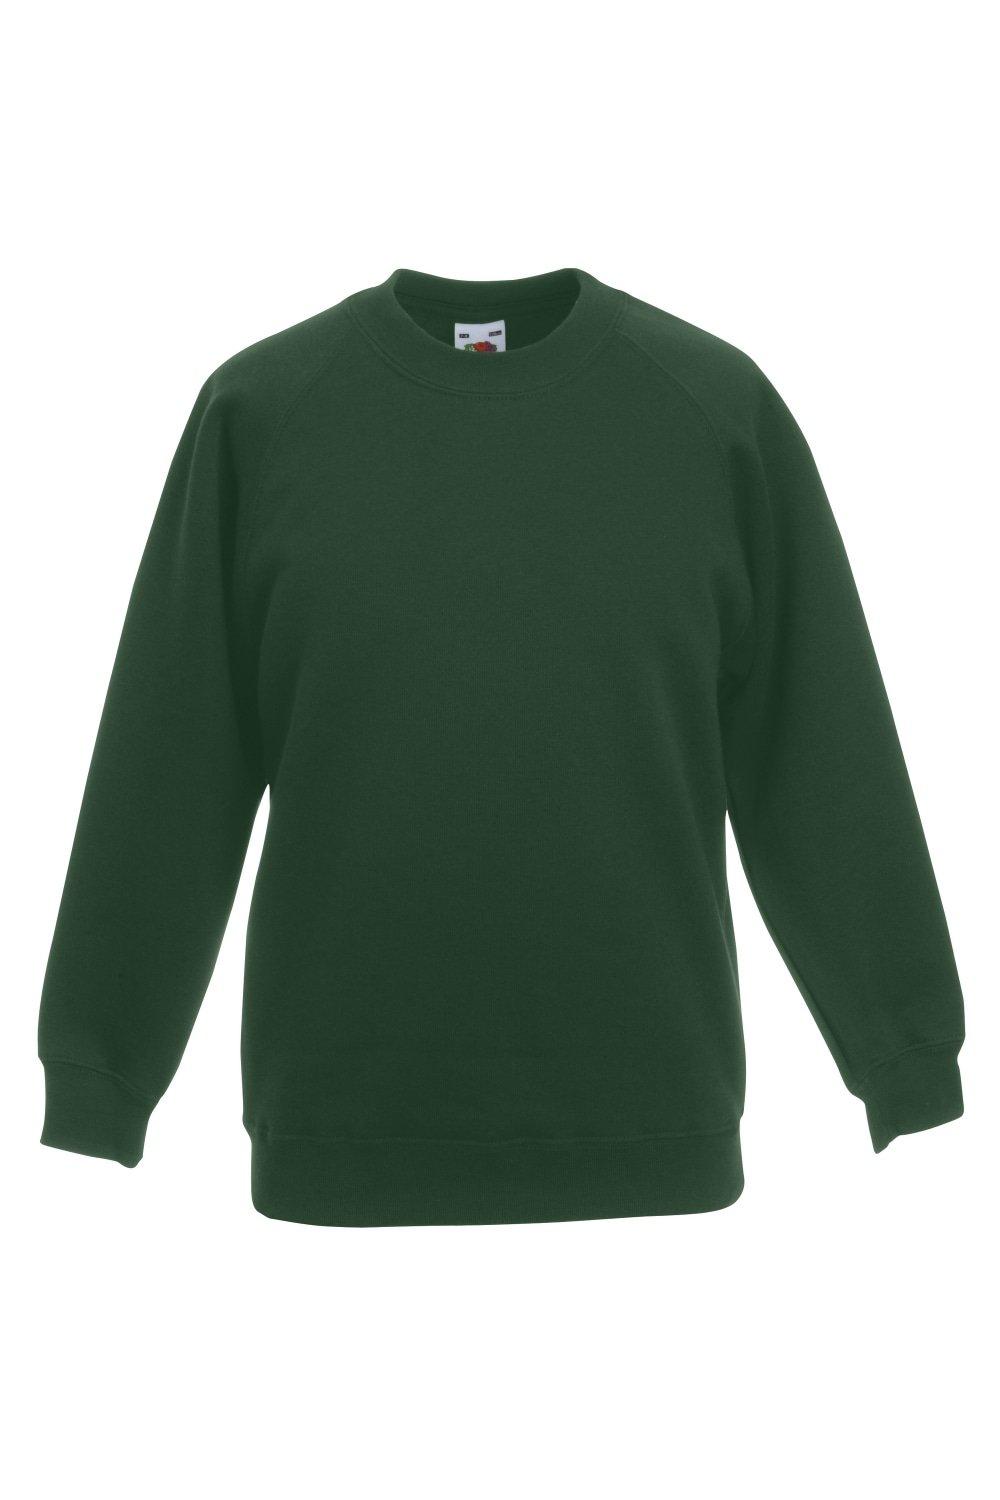 Raglan Sleeve Sweatshirt (Pack of 2)